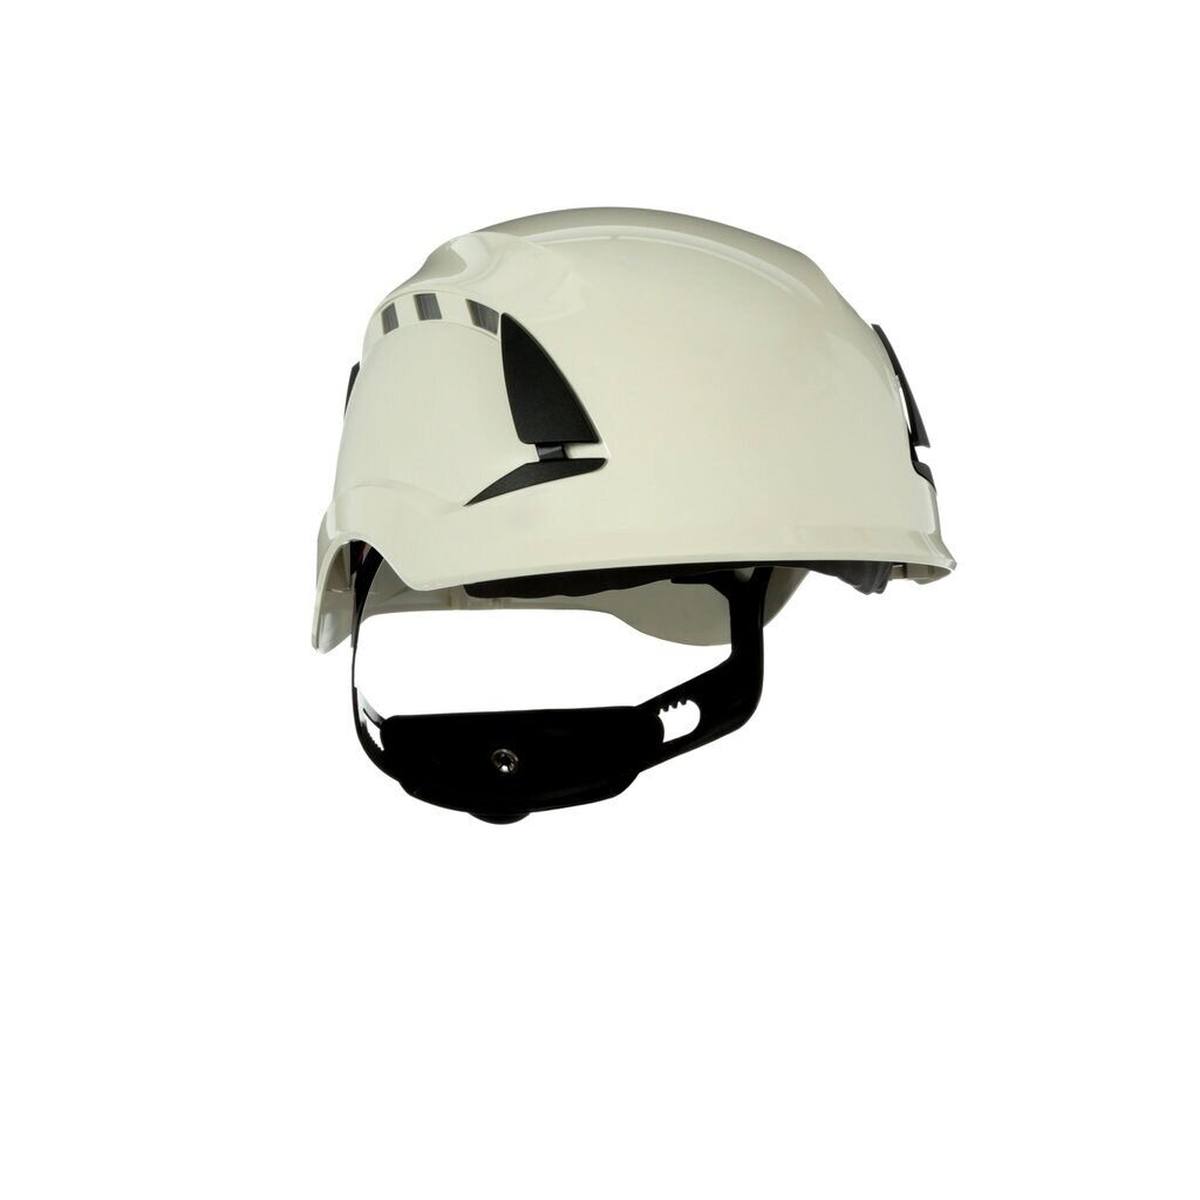 3M SecureFit casque de protection, X5505VE-CE, rouge, non ventilé, CE